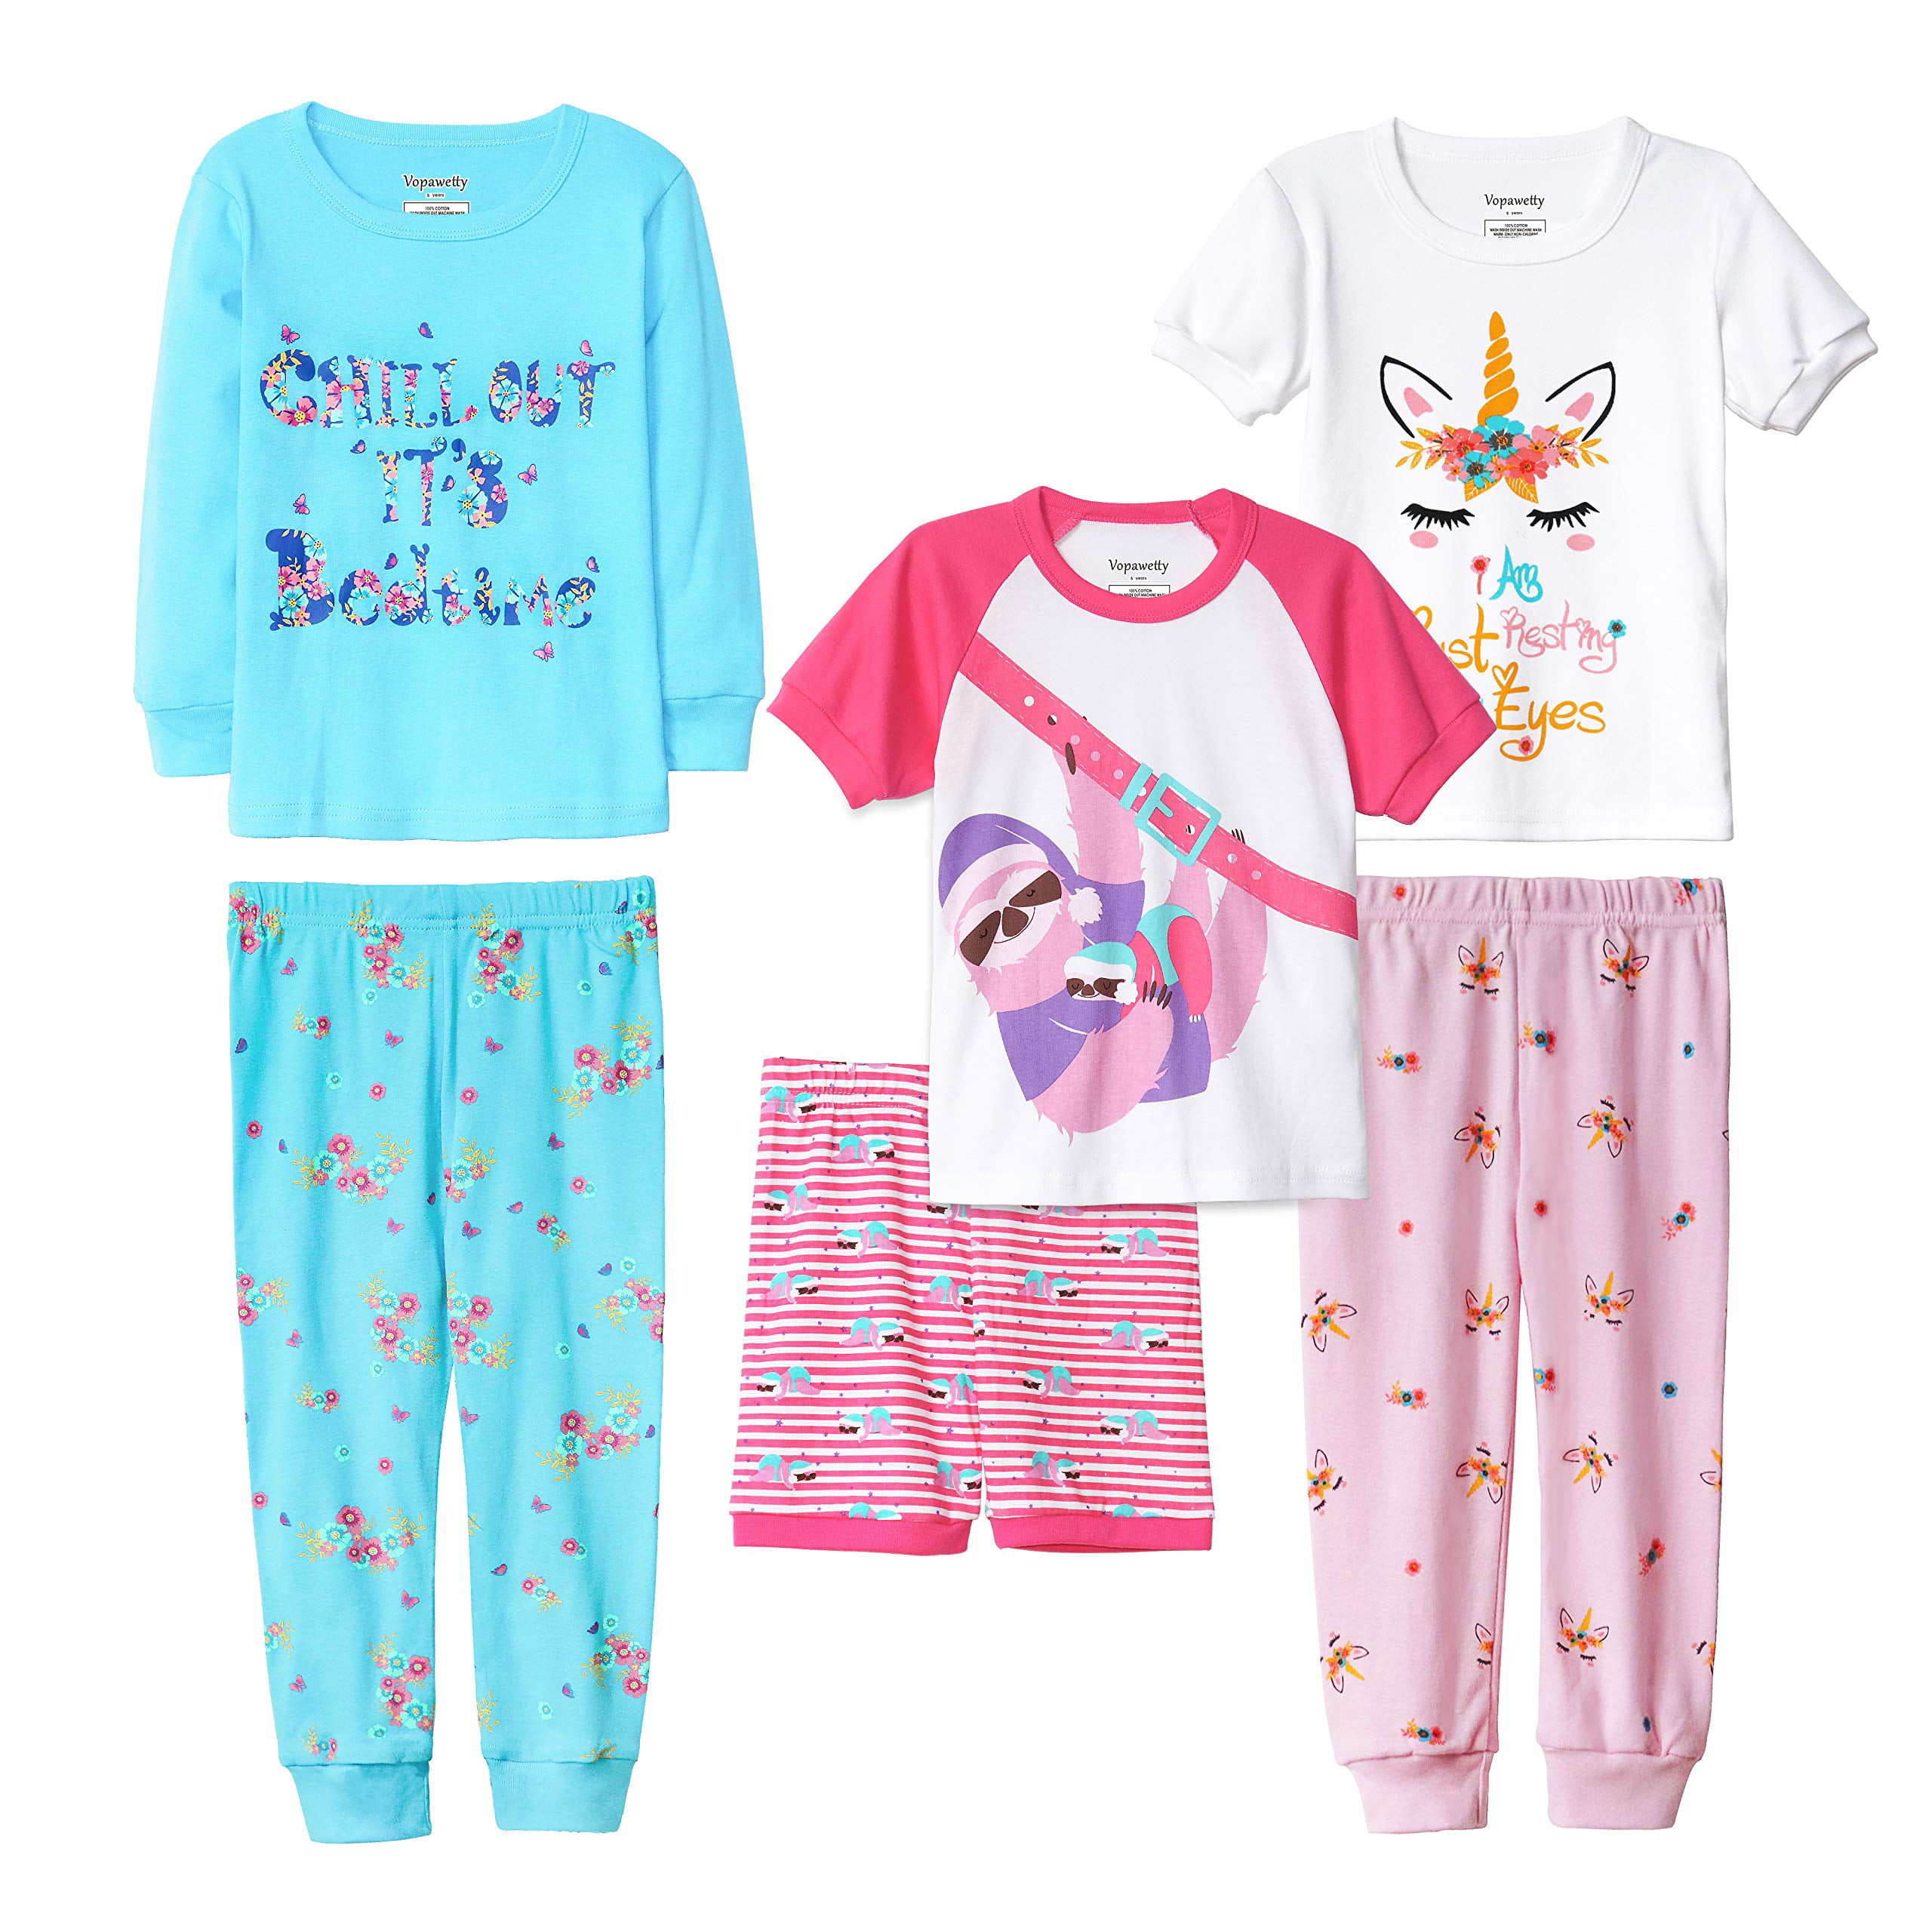 Vopawetty Boys' 6-Piece Snug-Fit Cotton Pajama Set Sleepwear 